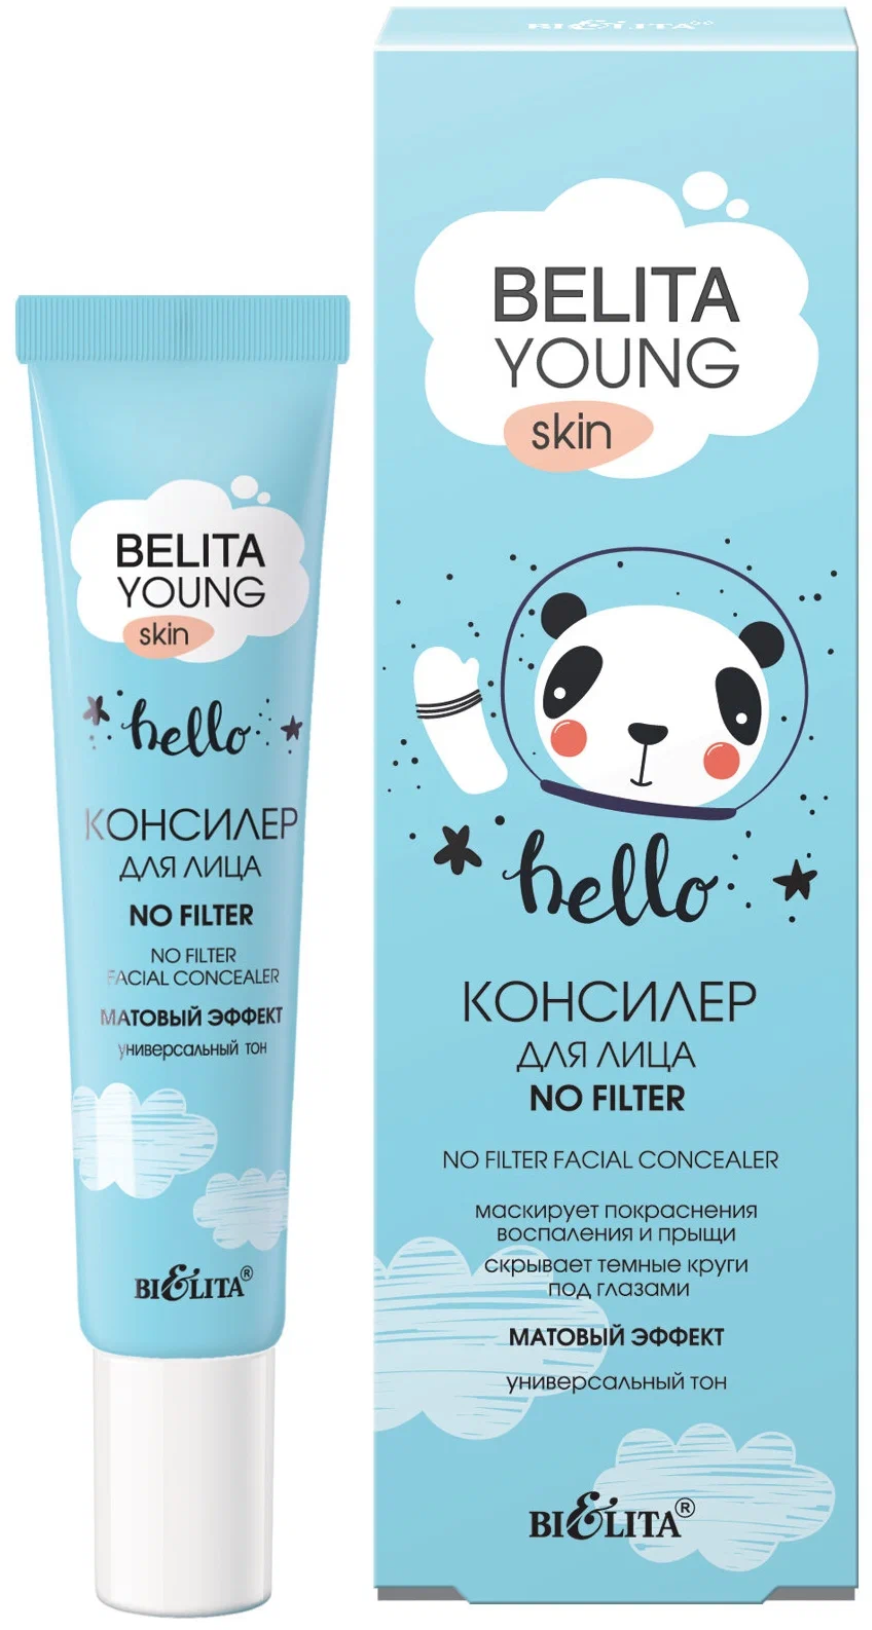 Белита / Belita Young Skin - Консилер для лица Hello No filter матовый эффект 20 мл